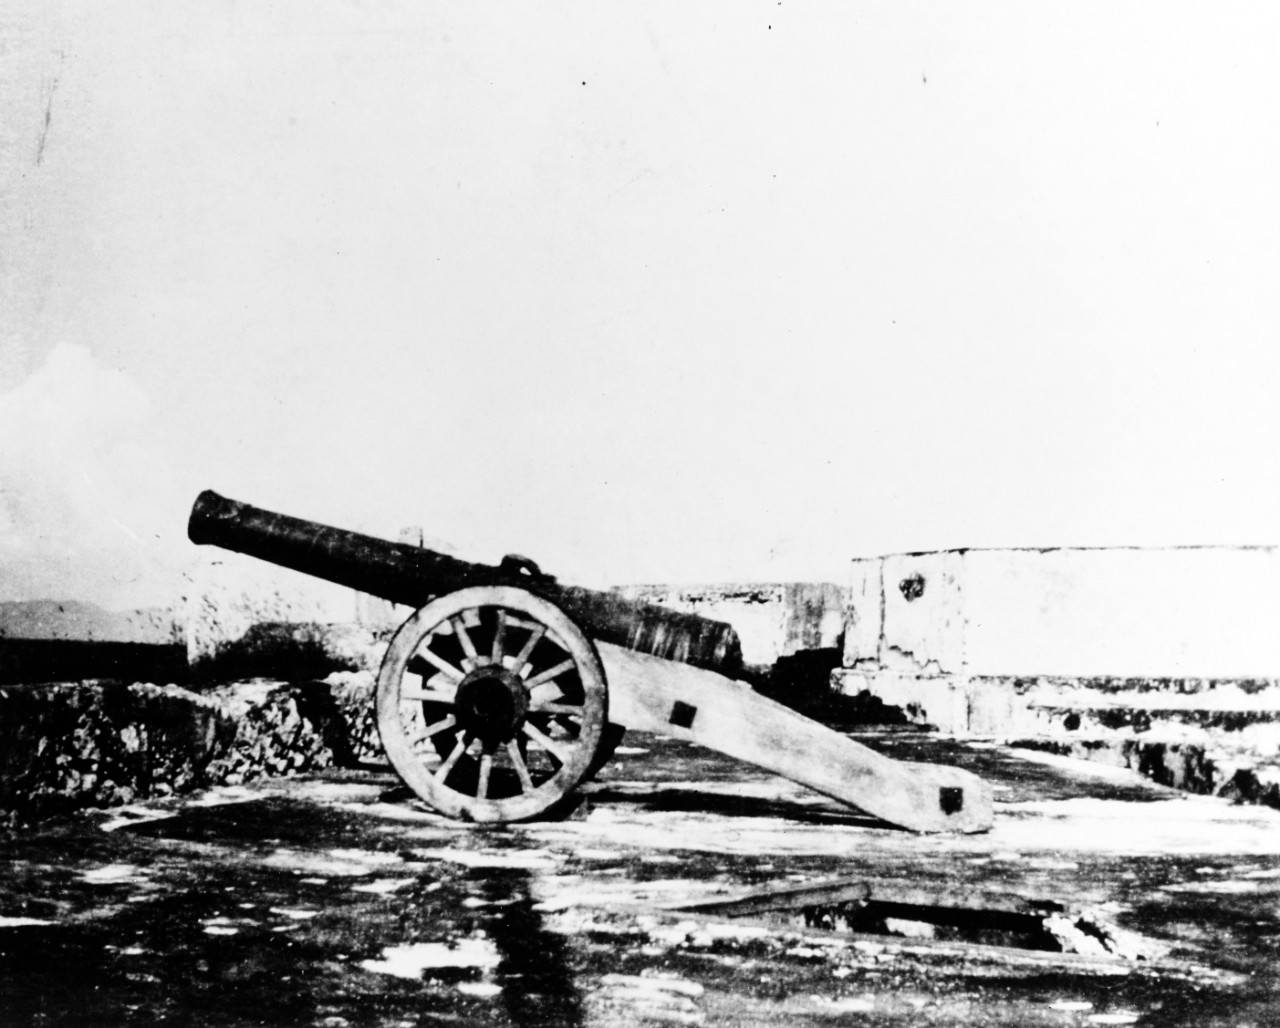 Cannon at Morro Castle, Cuba